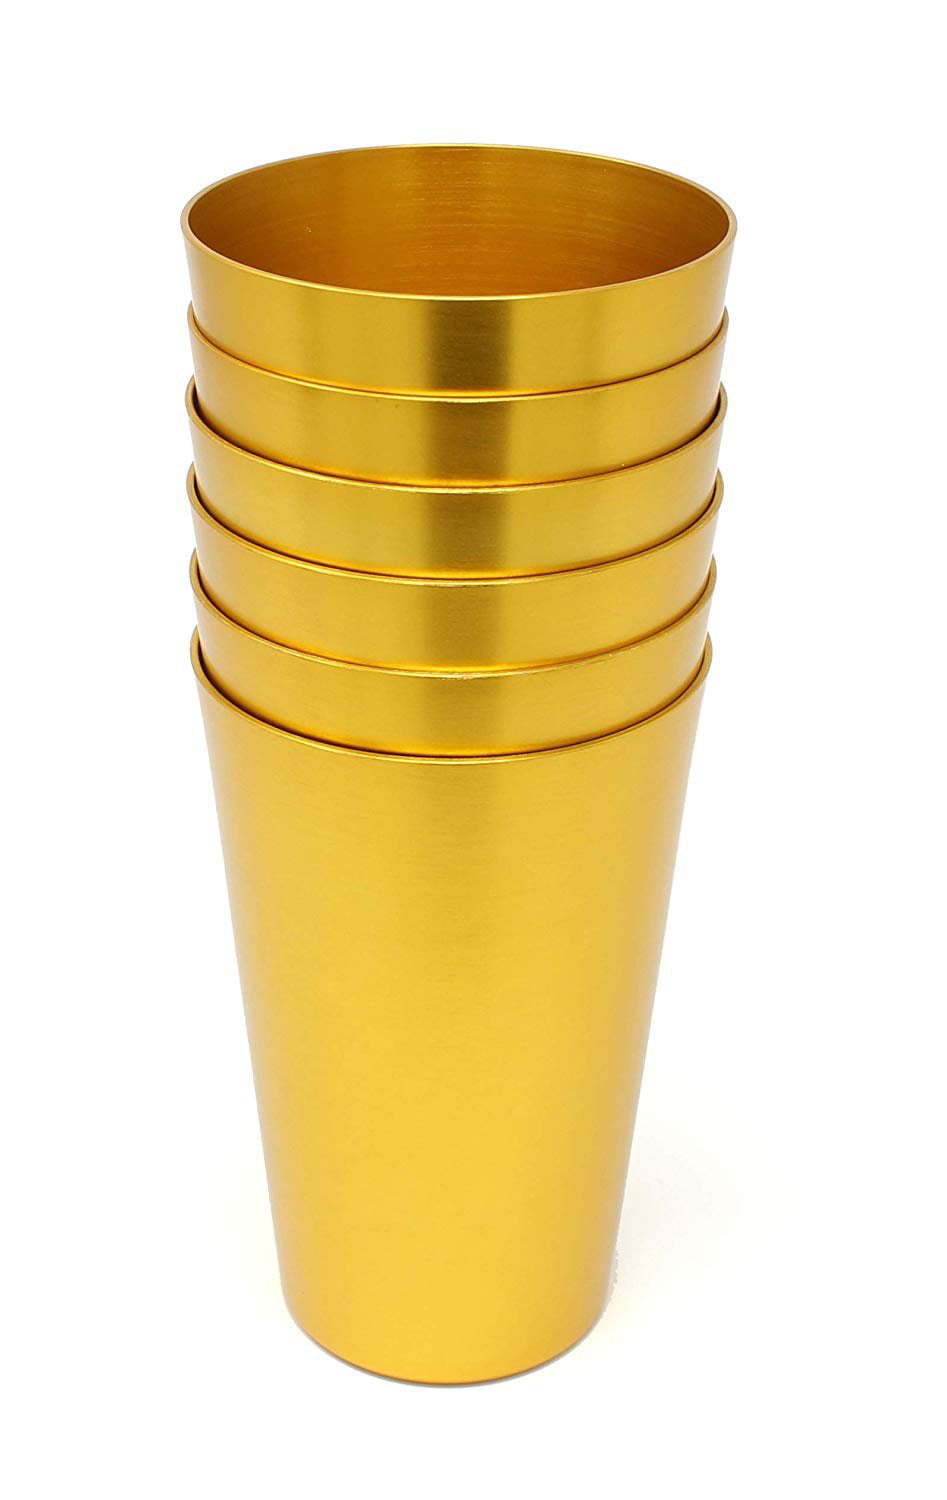 Bcb Wear Aluminum Tumbler Reusable 16 oz Drinking Cups - Bright Anodized Color - Set of 6 - Aqua, Aqua